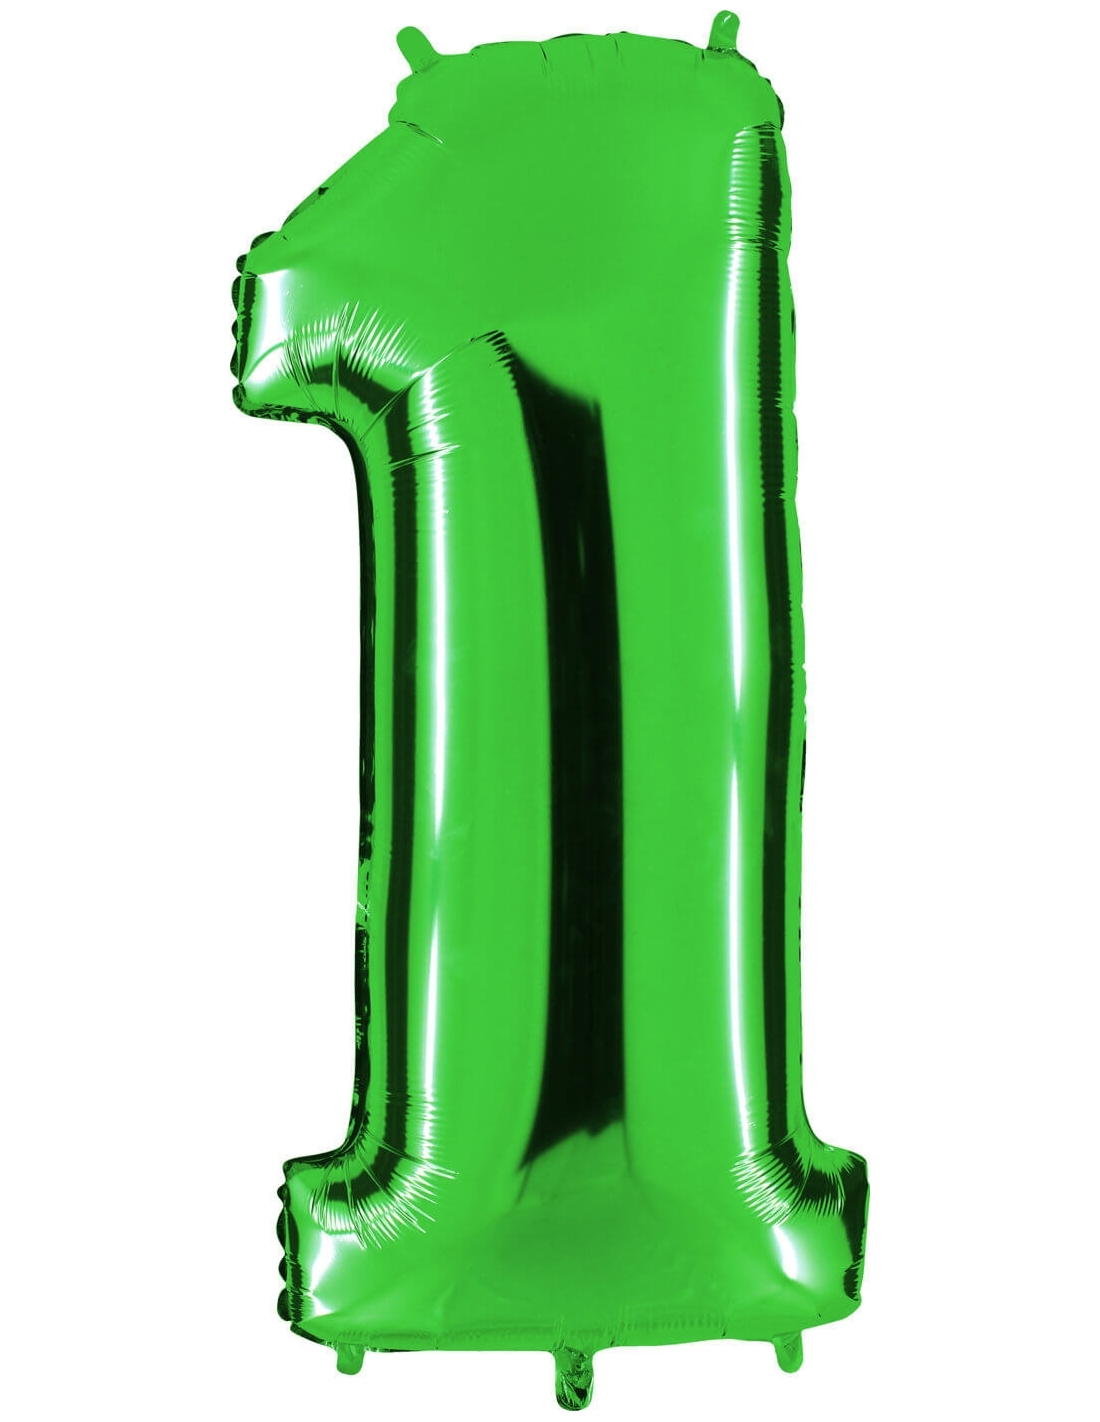 Globo Verde Metálico Brillante Número 1 Aislado En El Fondo Blanco Stock de  ilustración - Ilustración de burbuja, color: 150440644